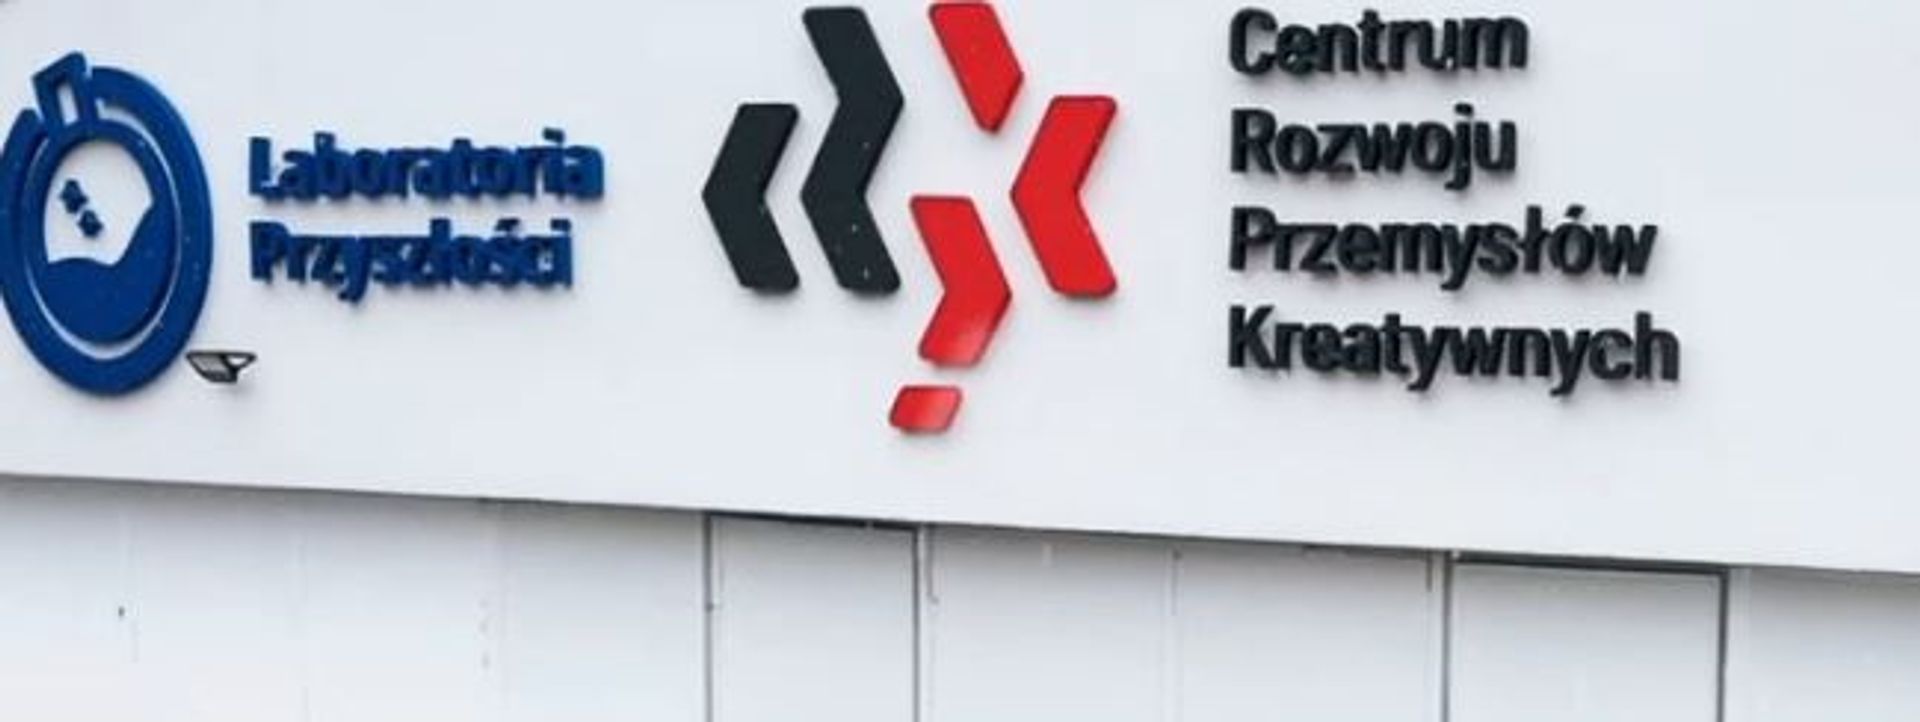 W Warszawie otwarto halę Laboratoria Przyszłości Centrum Rozwoju Przemysłów Kreatywnych 